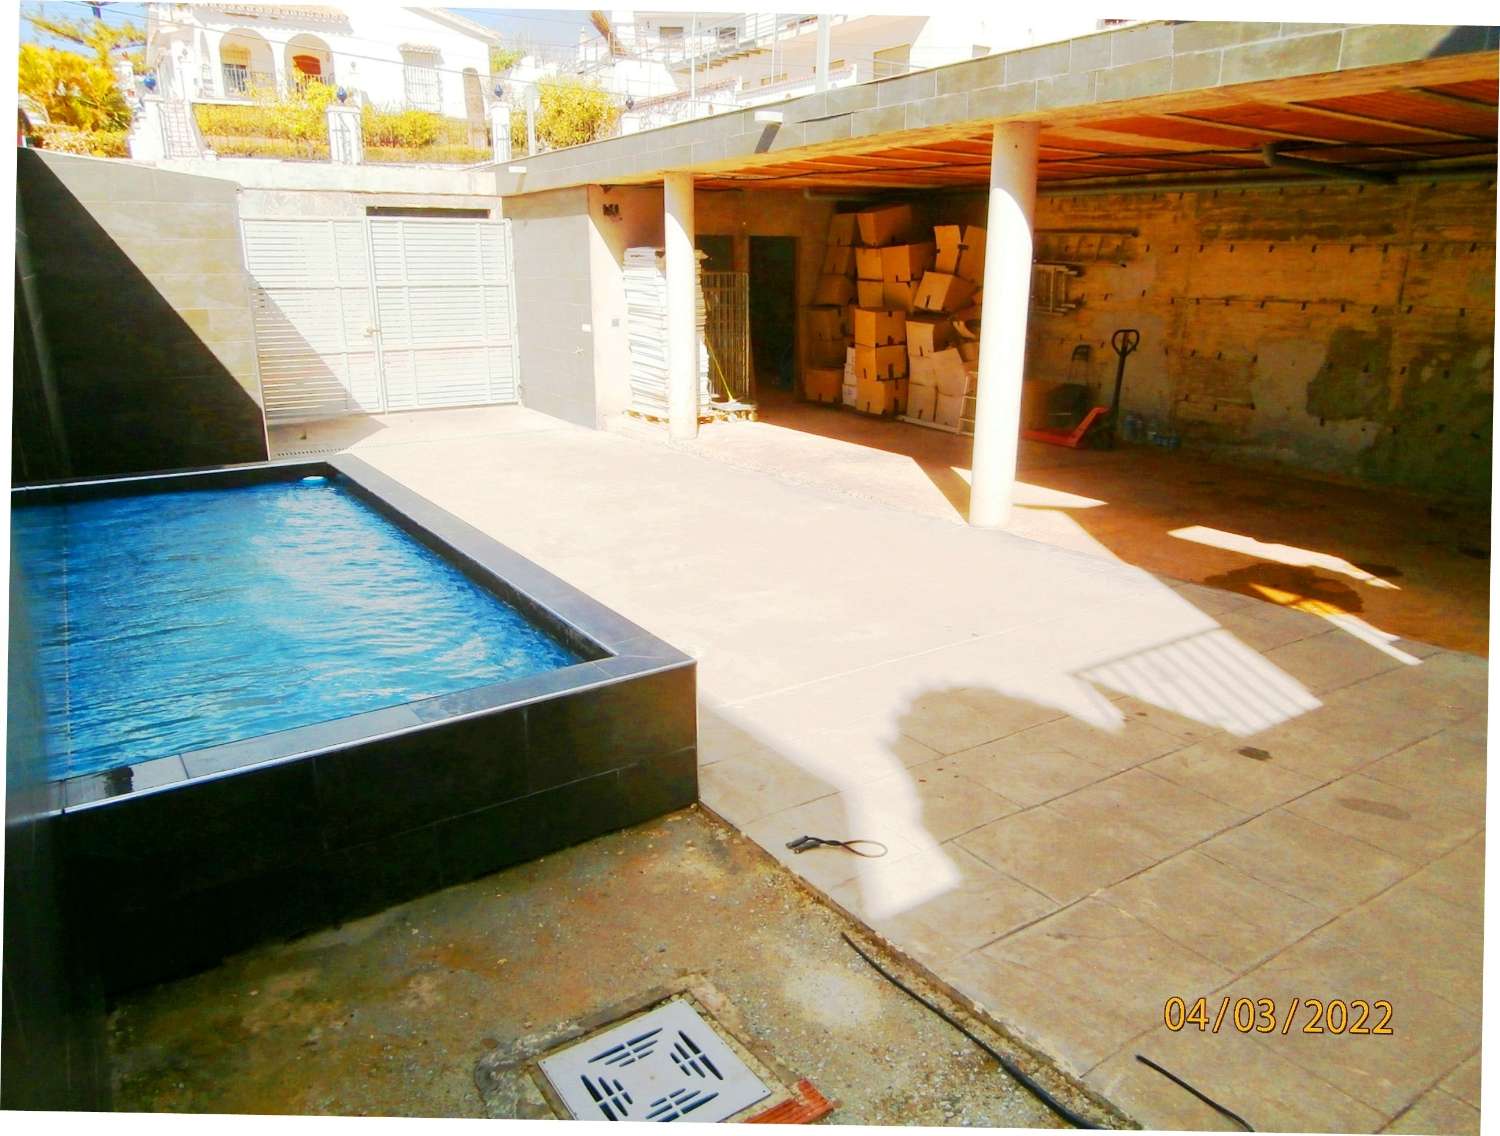 Villa independiente con piscina, vistas al mar, gran potencial, necesita varias terminaciones, PRECIO ORIGINAL 540.000€.